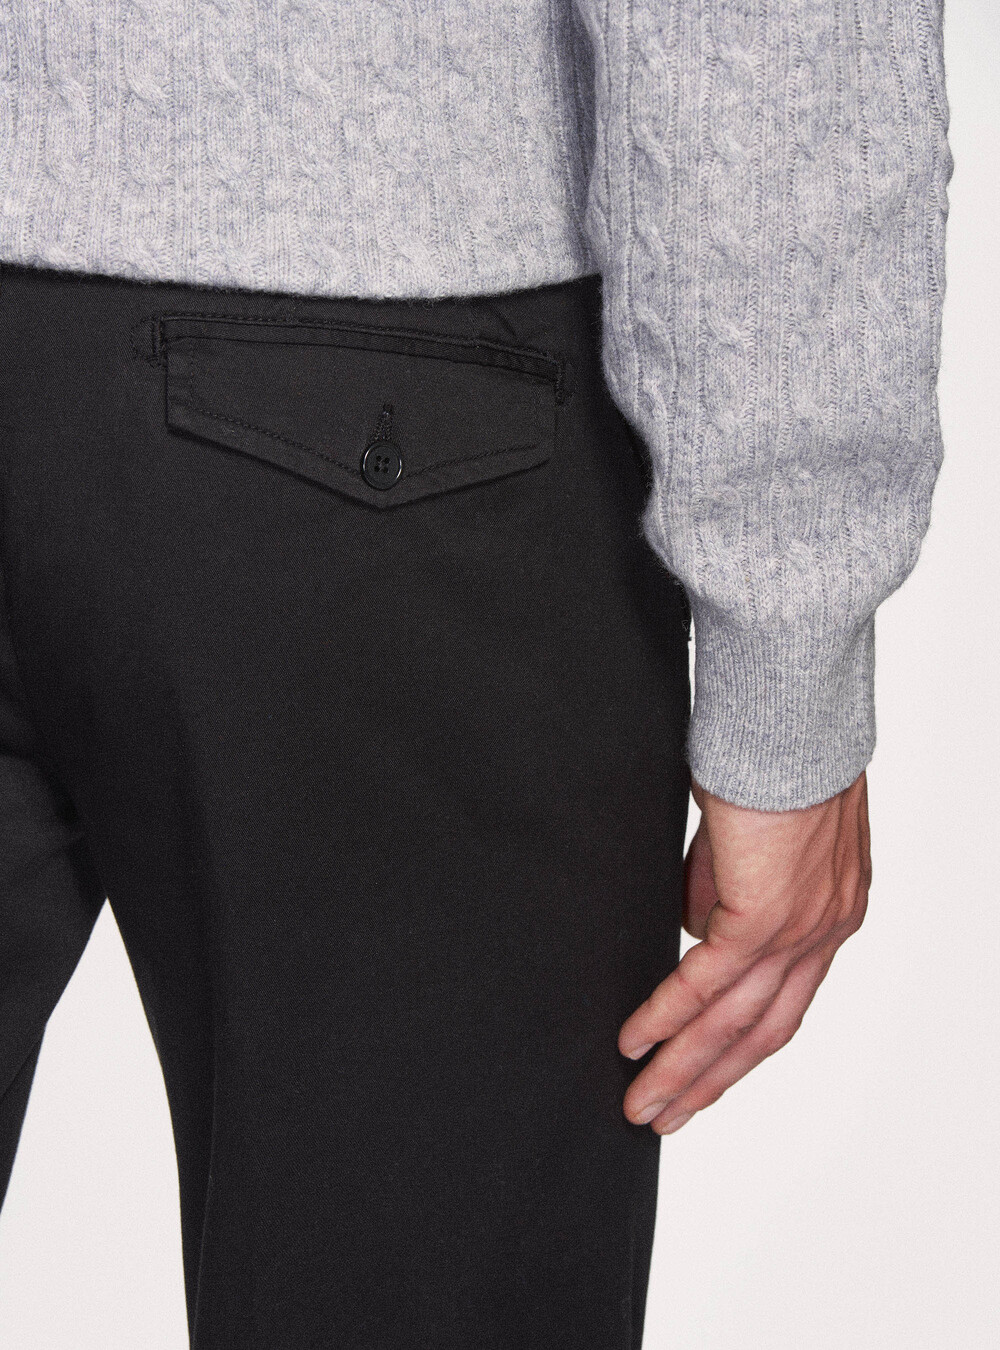 Pantalones chinos de de algodón elástico | GutteridgeEU |